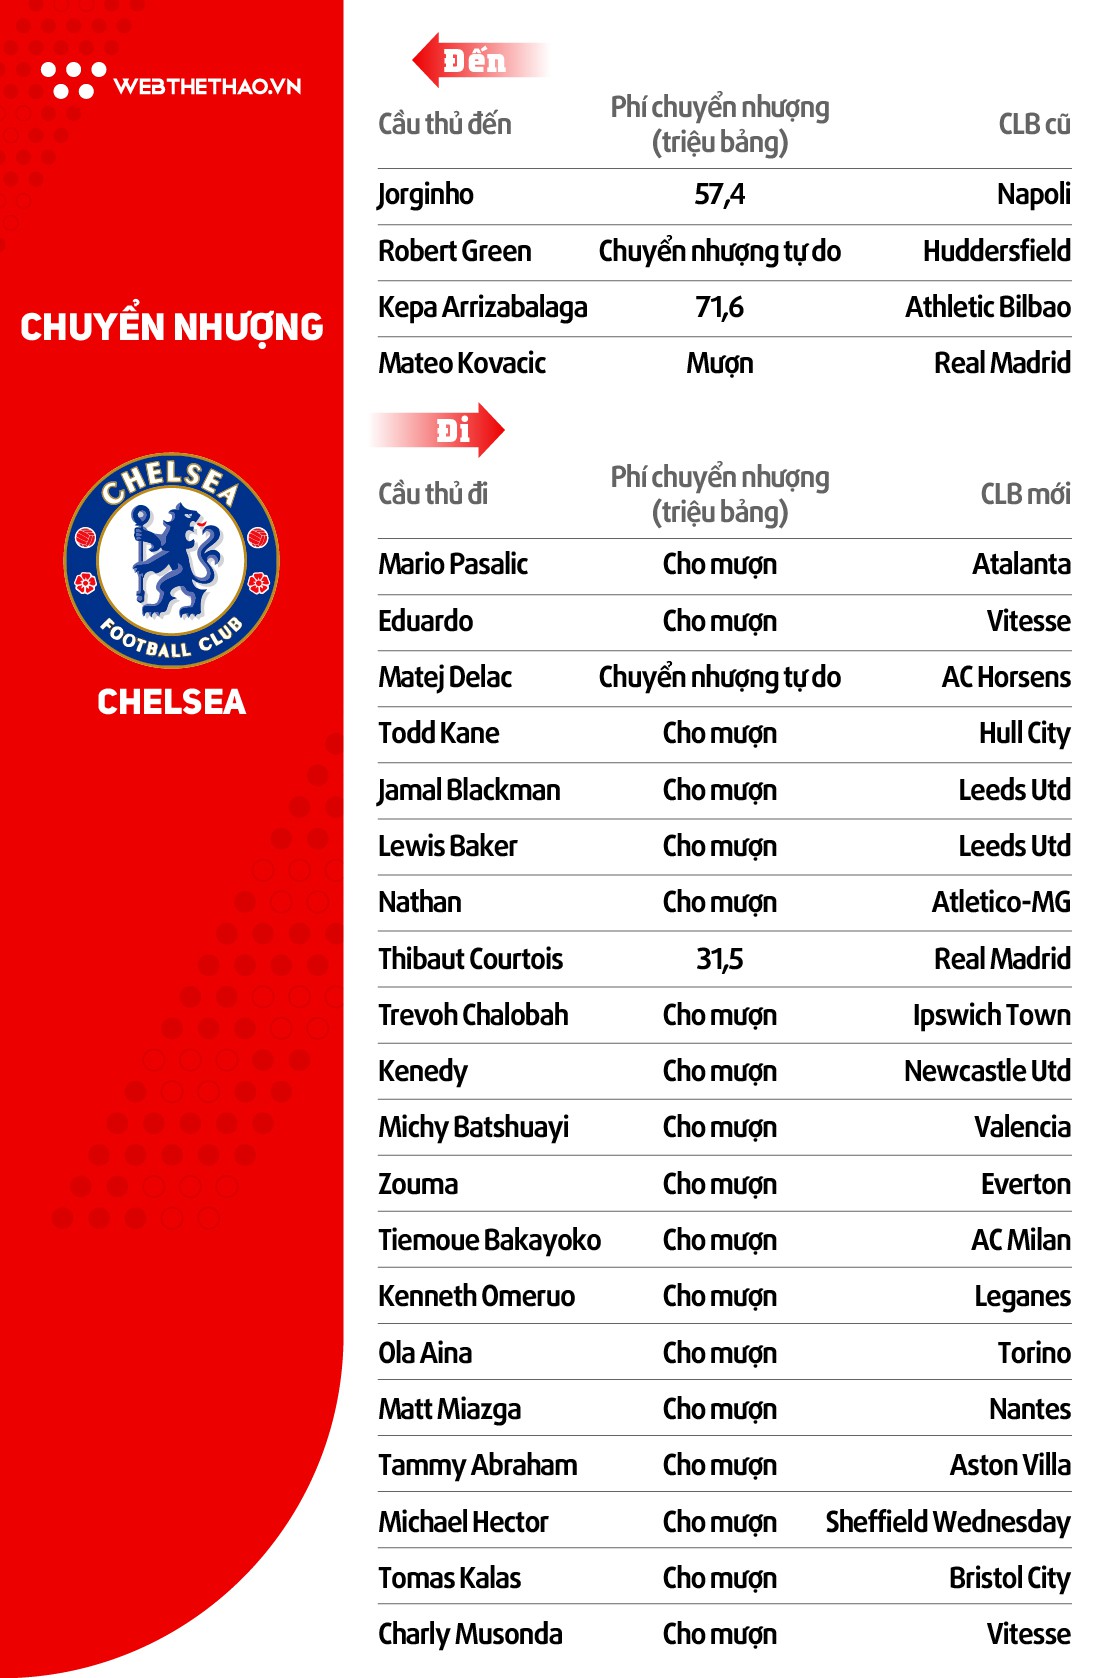 Thông tin đội hình CLB Chelsea ở giải Ngoại hạng Anh mùa 2018/19 - Ảnh 5.